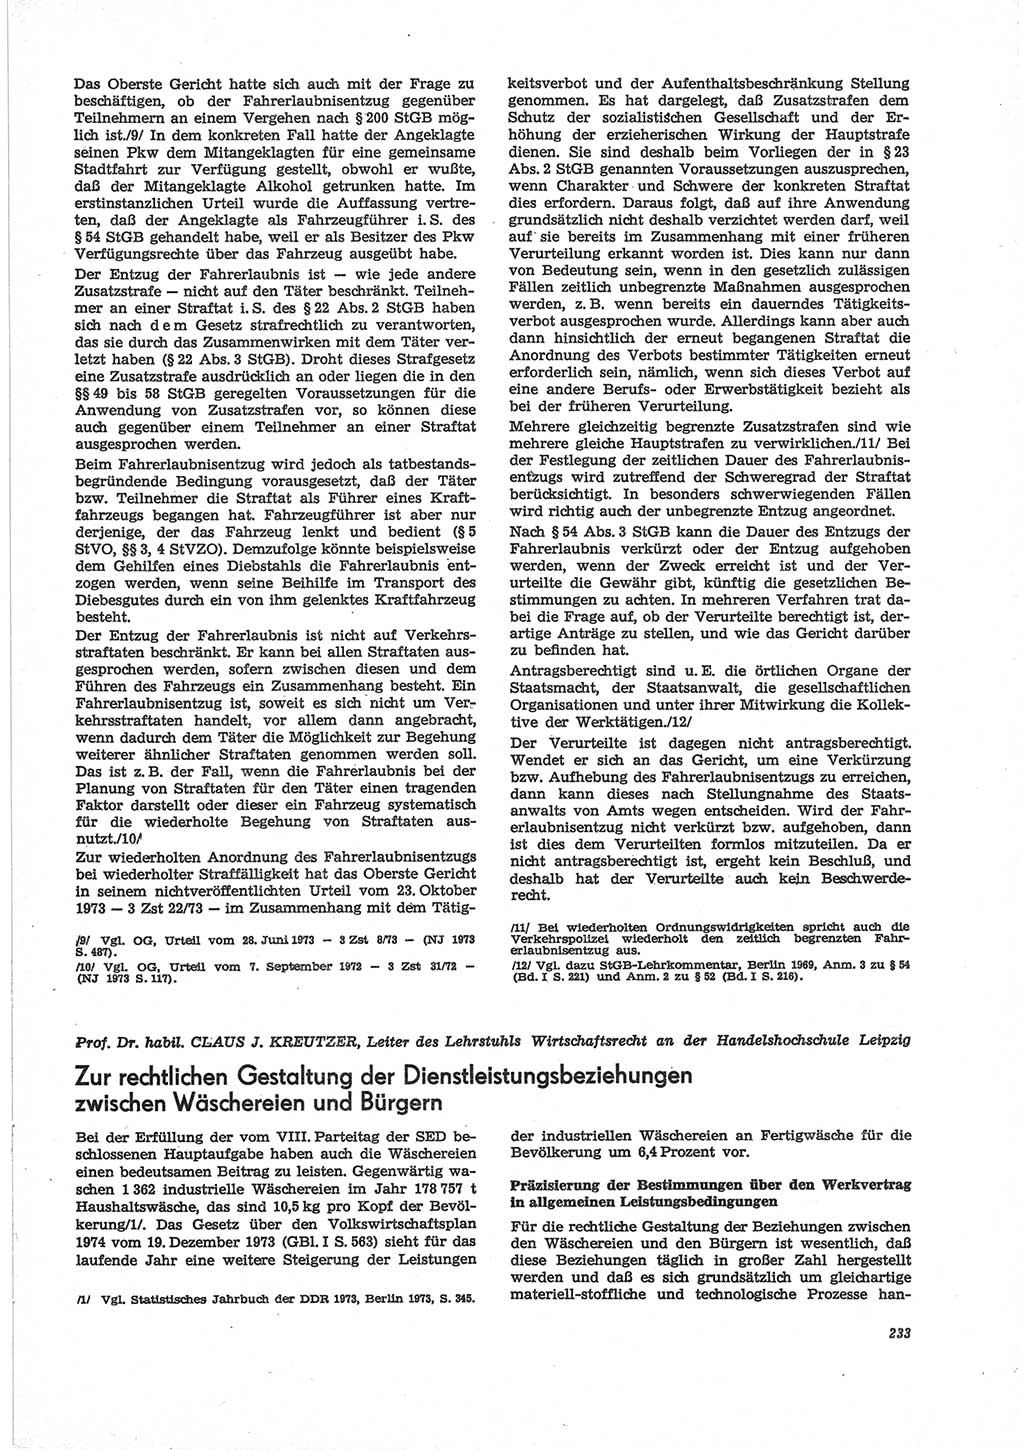 Neue Justiz (NJ), Zeitschrift für Recht und Rechtswissenschaft [Deutsche Demokratische Republik (DDR)], 28. Jahrgang 1974, Seite 233 (NJ DDR 1974, S. 233)